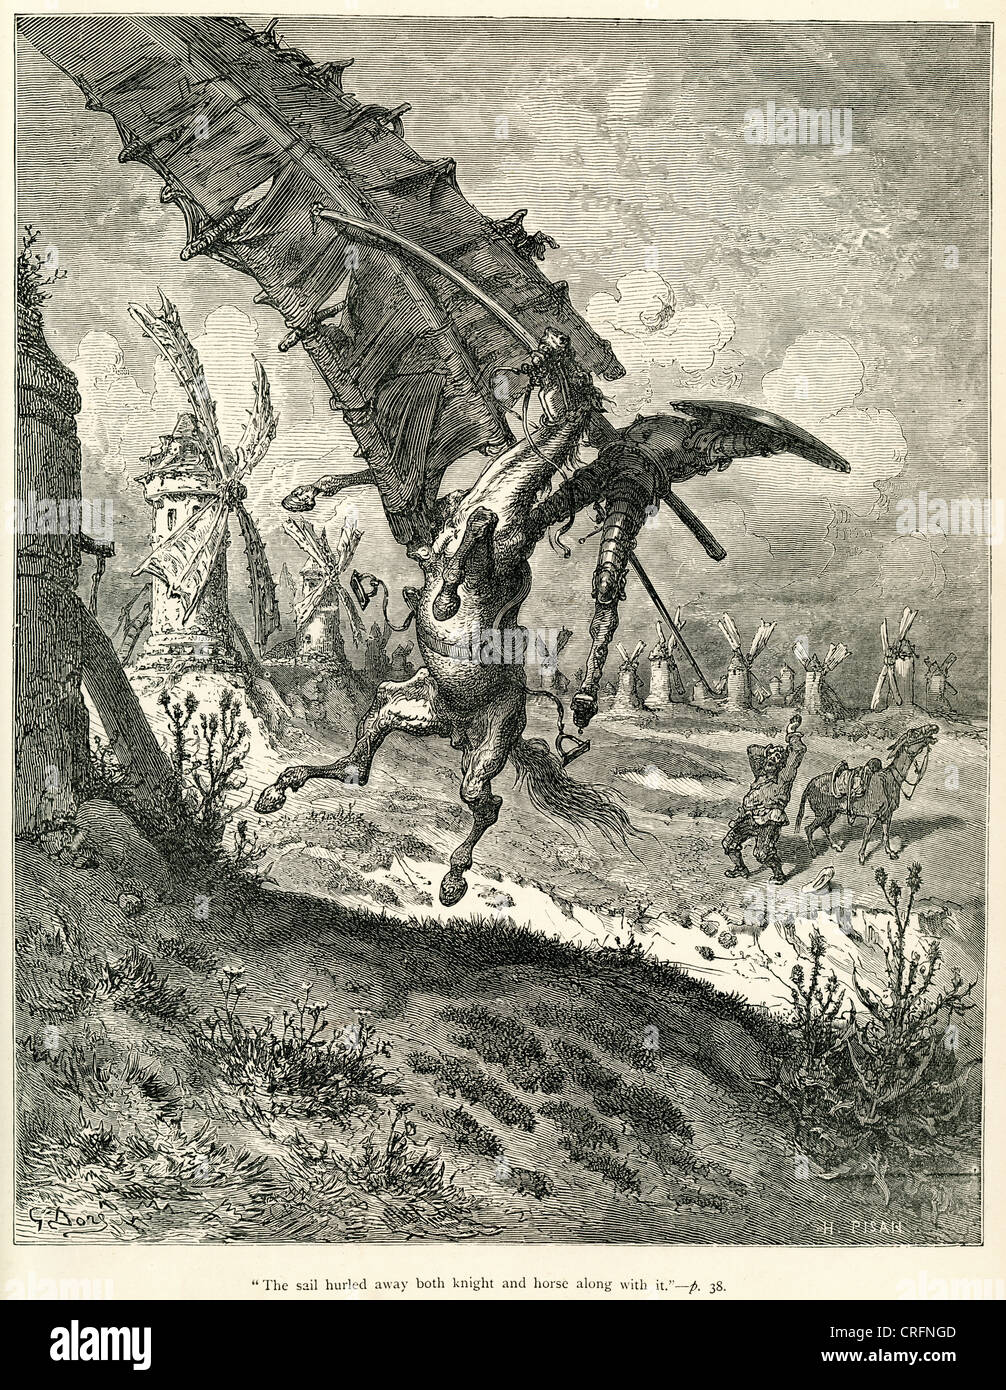 Don Quijote gegen Windmühlen. Illustration von Gustave Dore von Don Quijote. Stockfoto